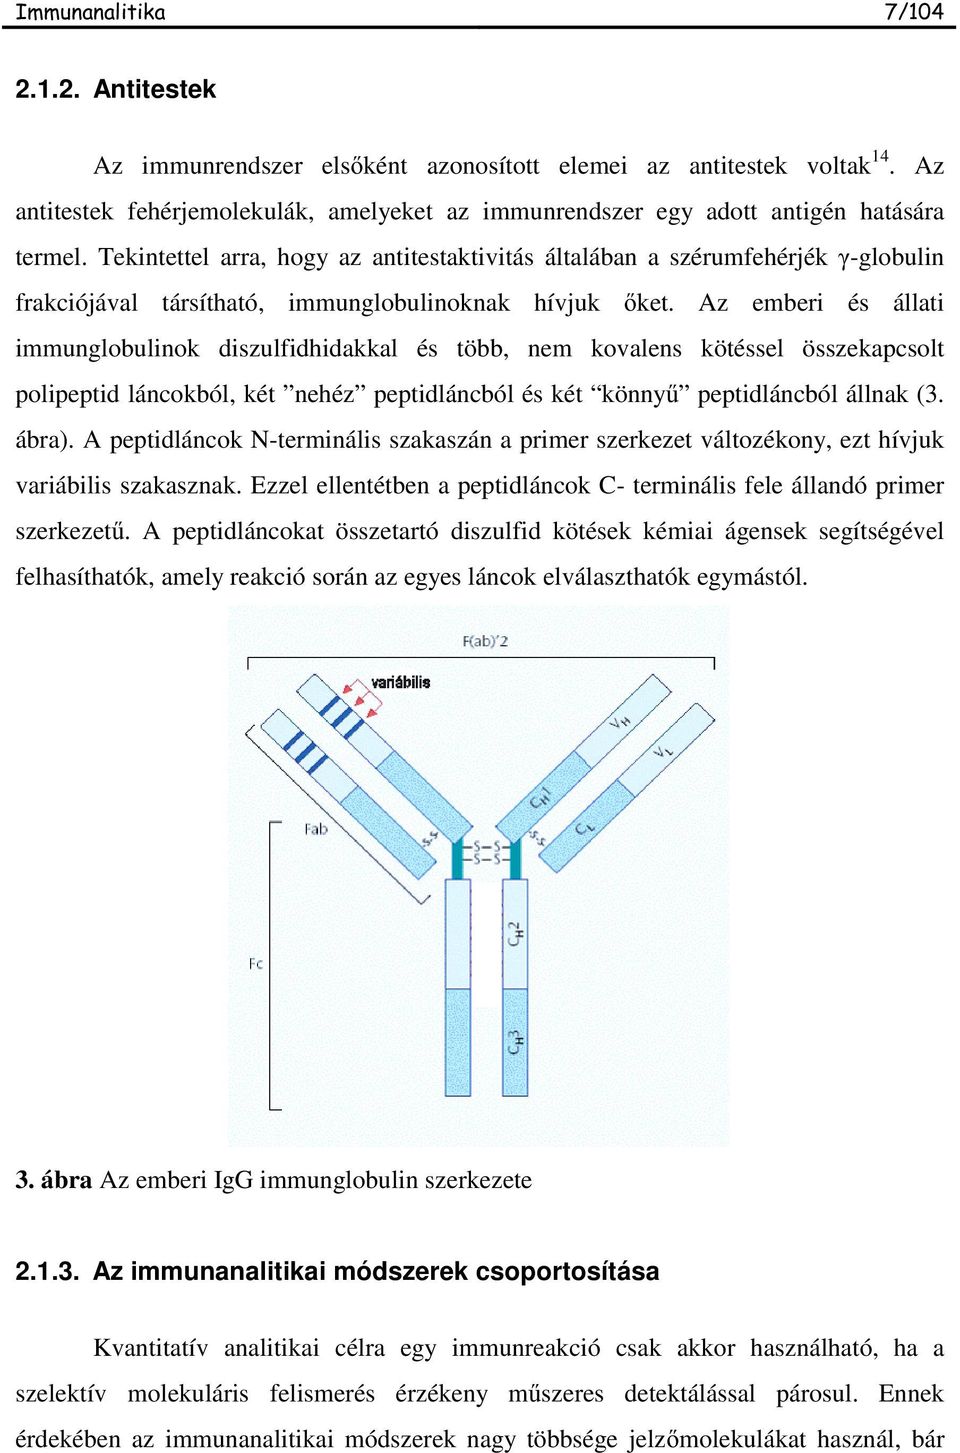 Az emberi és állati immunglobulinok diszulfidhidakkal és több, nem kovalens kötéssel összekapcsolt polipeptid láncokból, két nehéz peptidláncból és két könny peptidláncból állnak (3. ábra).